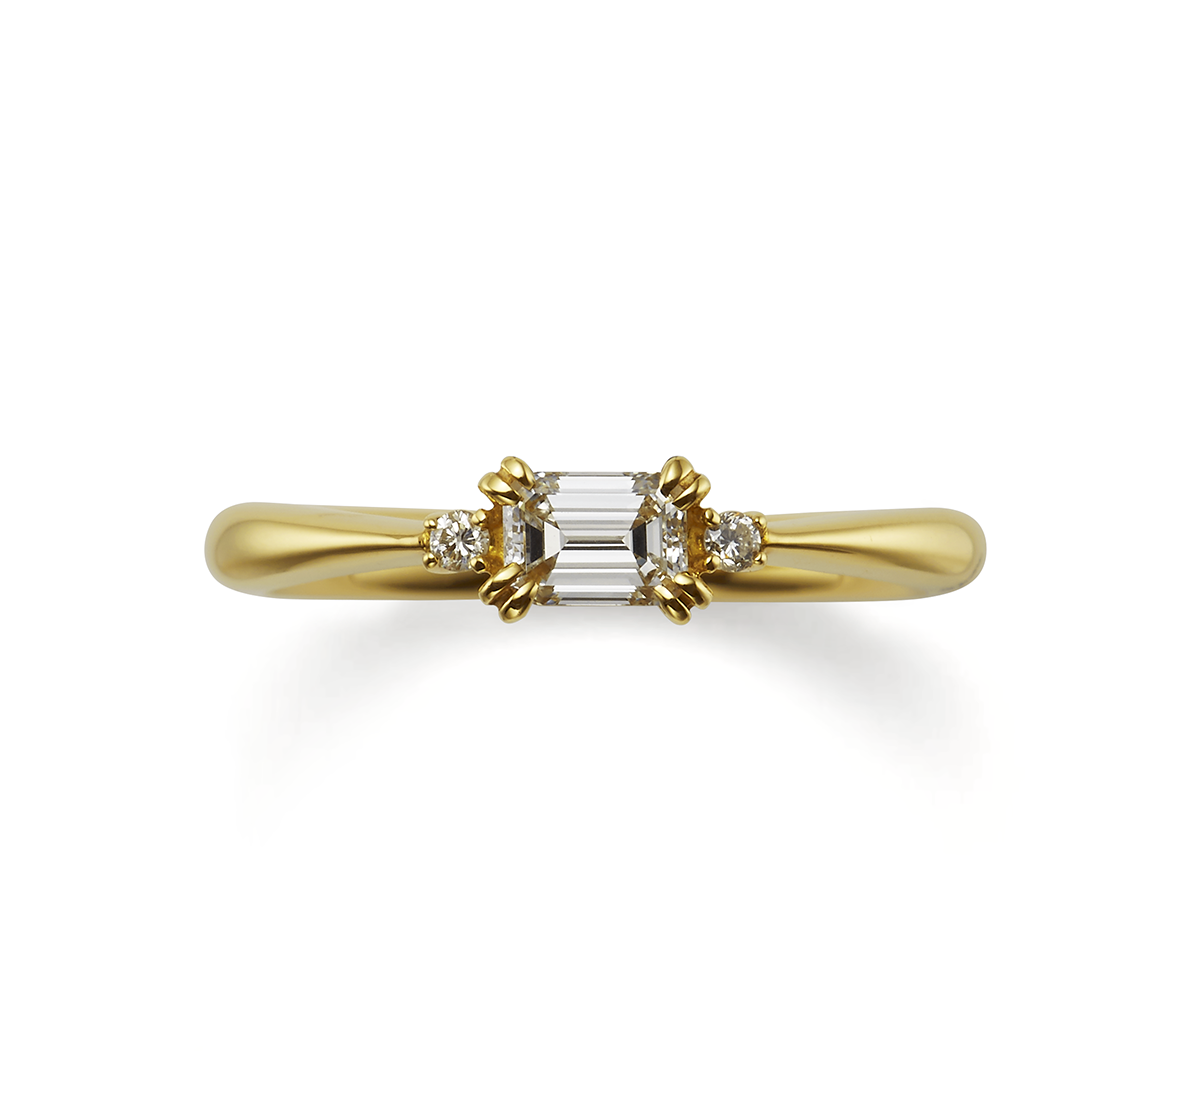 エメラルドカットのダイヤモンドが美しいオレッキオの婚約指輪ピピはサイドメレのダイヤモンドが可愛さも演出してくれる人気の婚約指輪